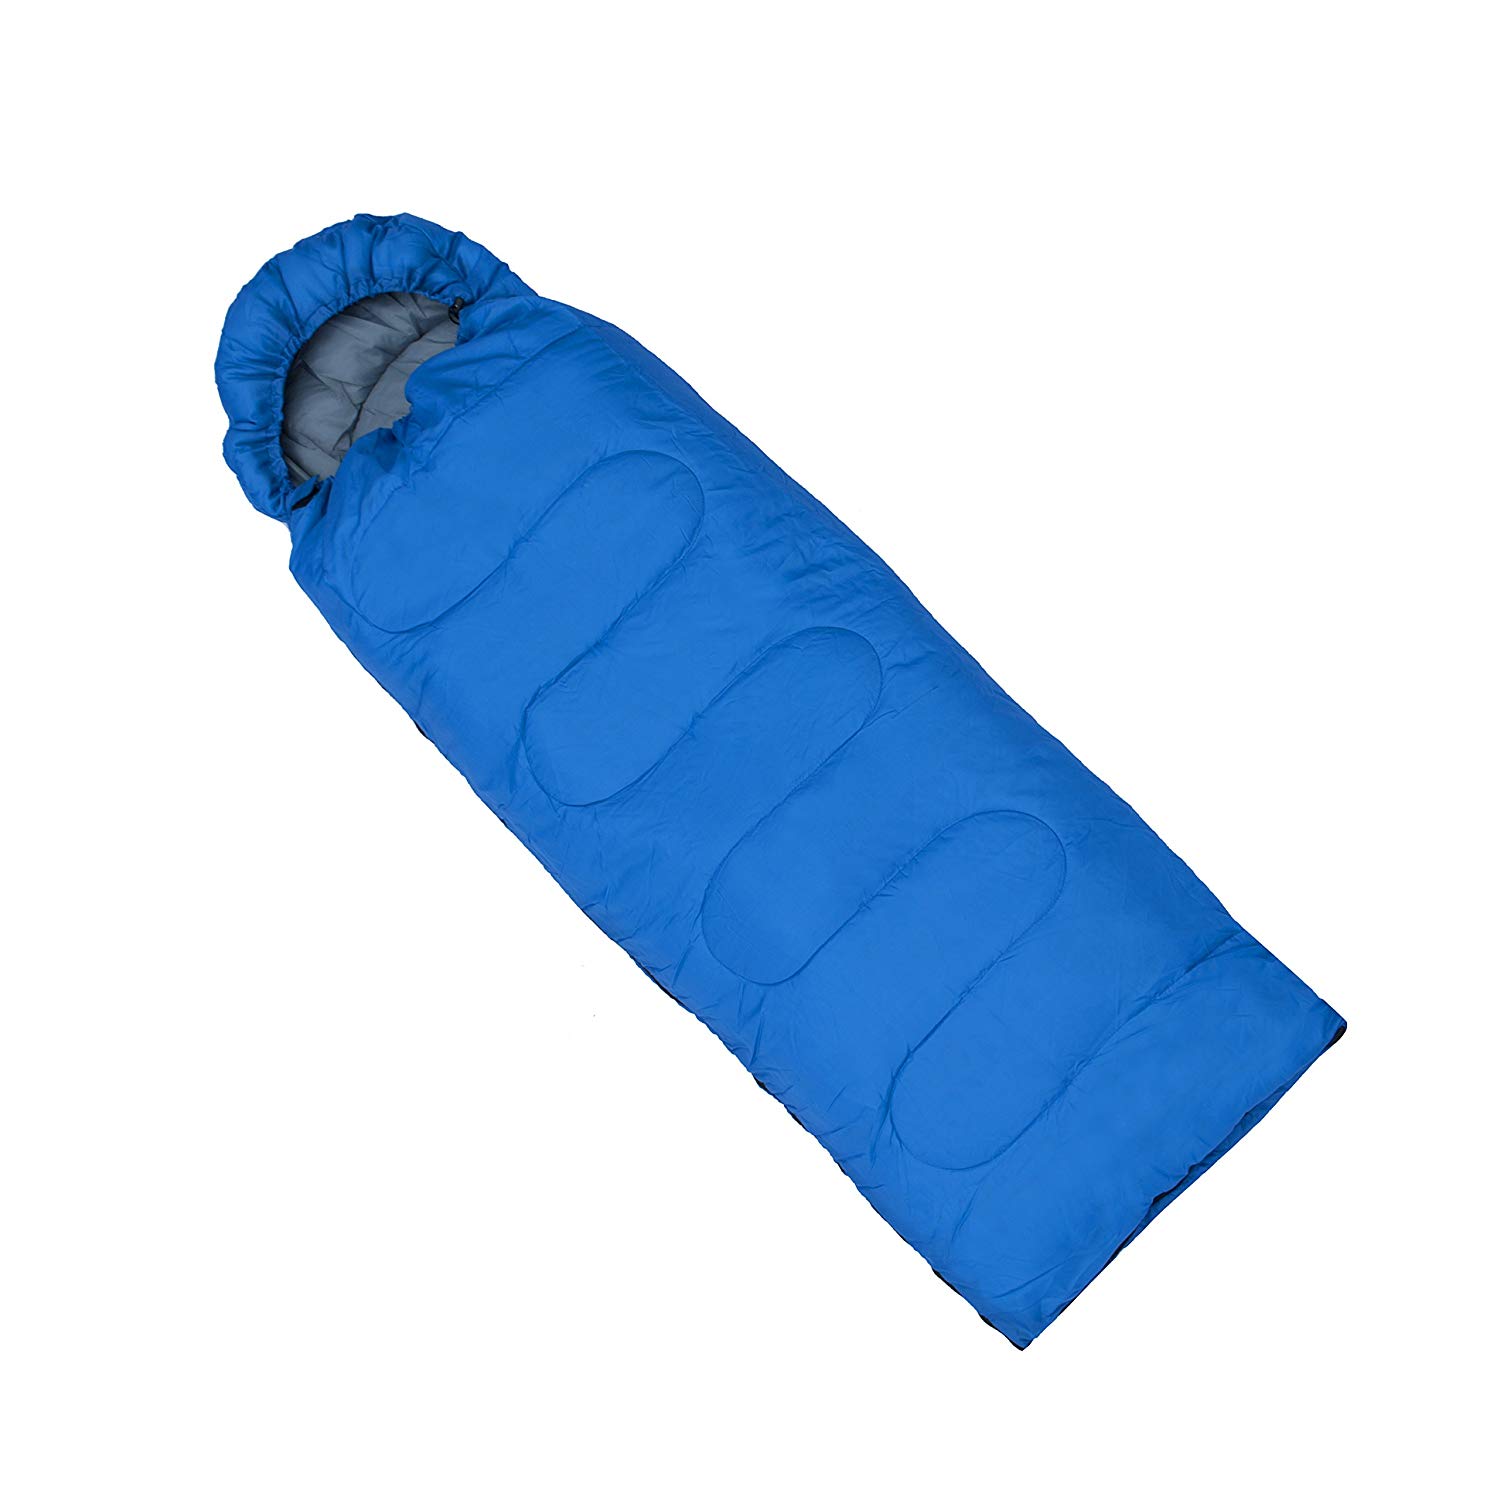 Мешок спальный (одеяло) Saimaa Comfort 200, 200*75см. Спальный мешок, 190*75 см, арт. Msk2086. Спальник зимний одеяло. Турист в спальном мешке. Спальный мешок camp